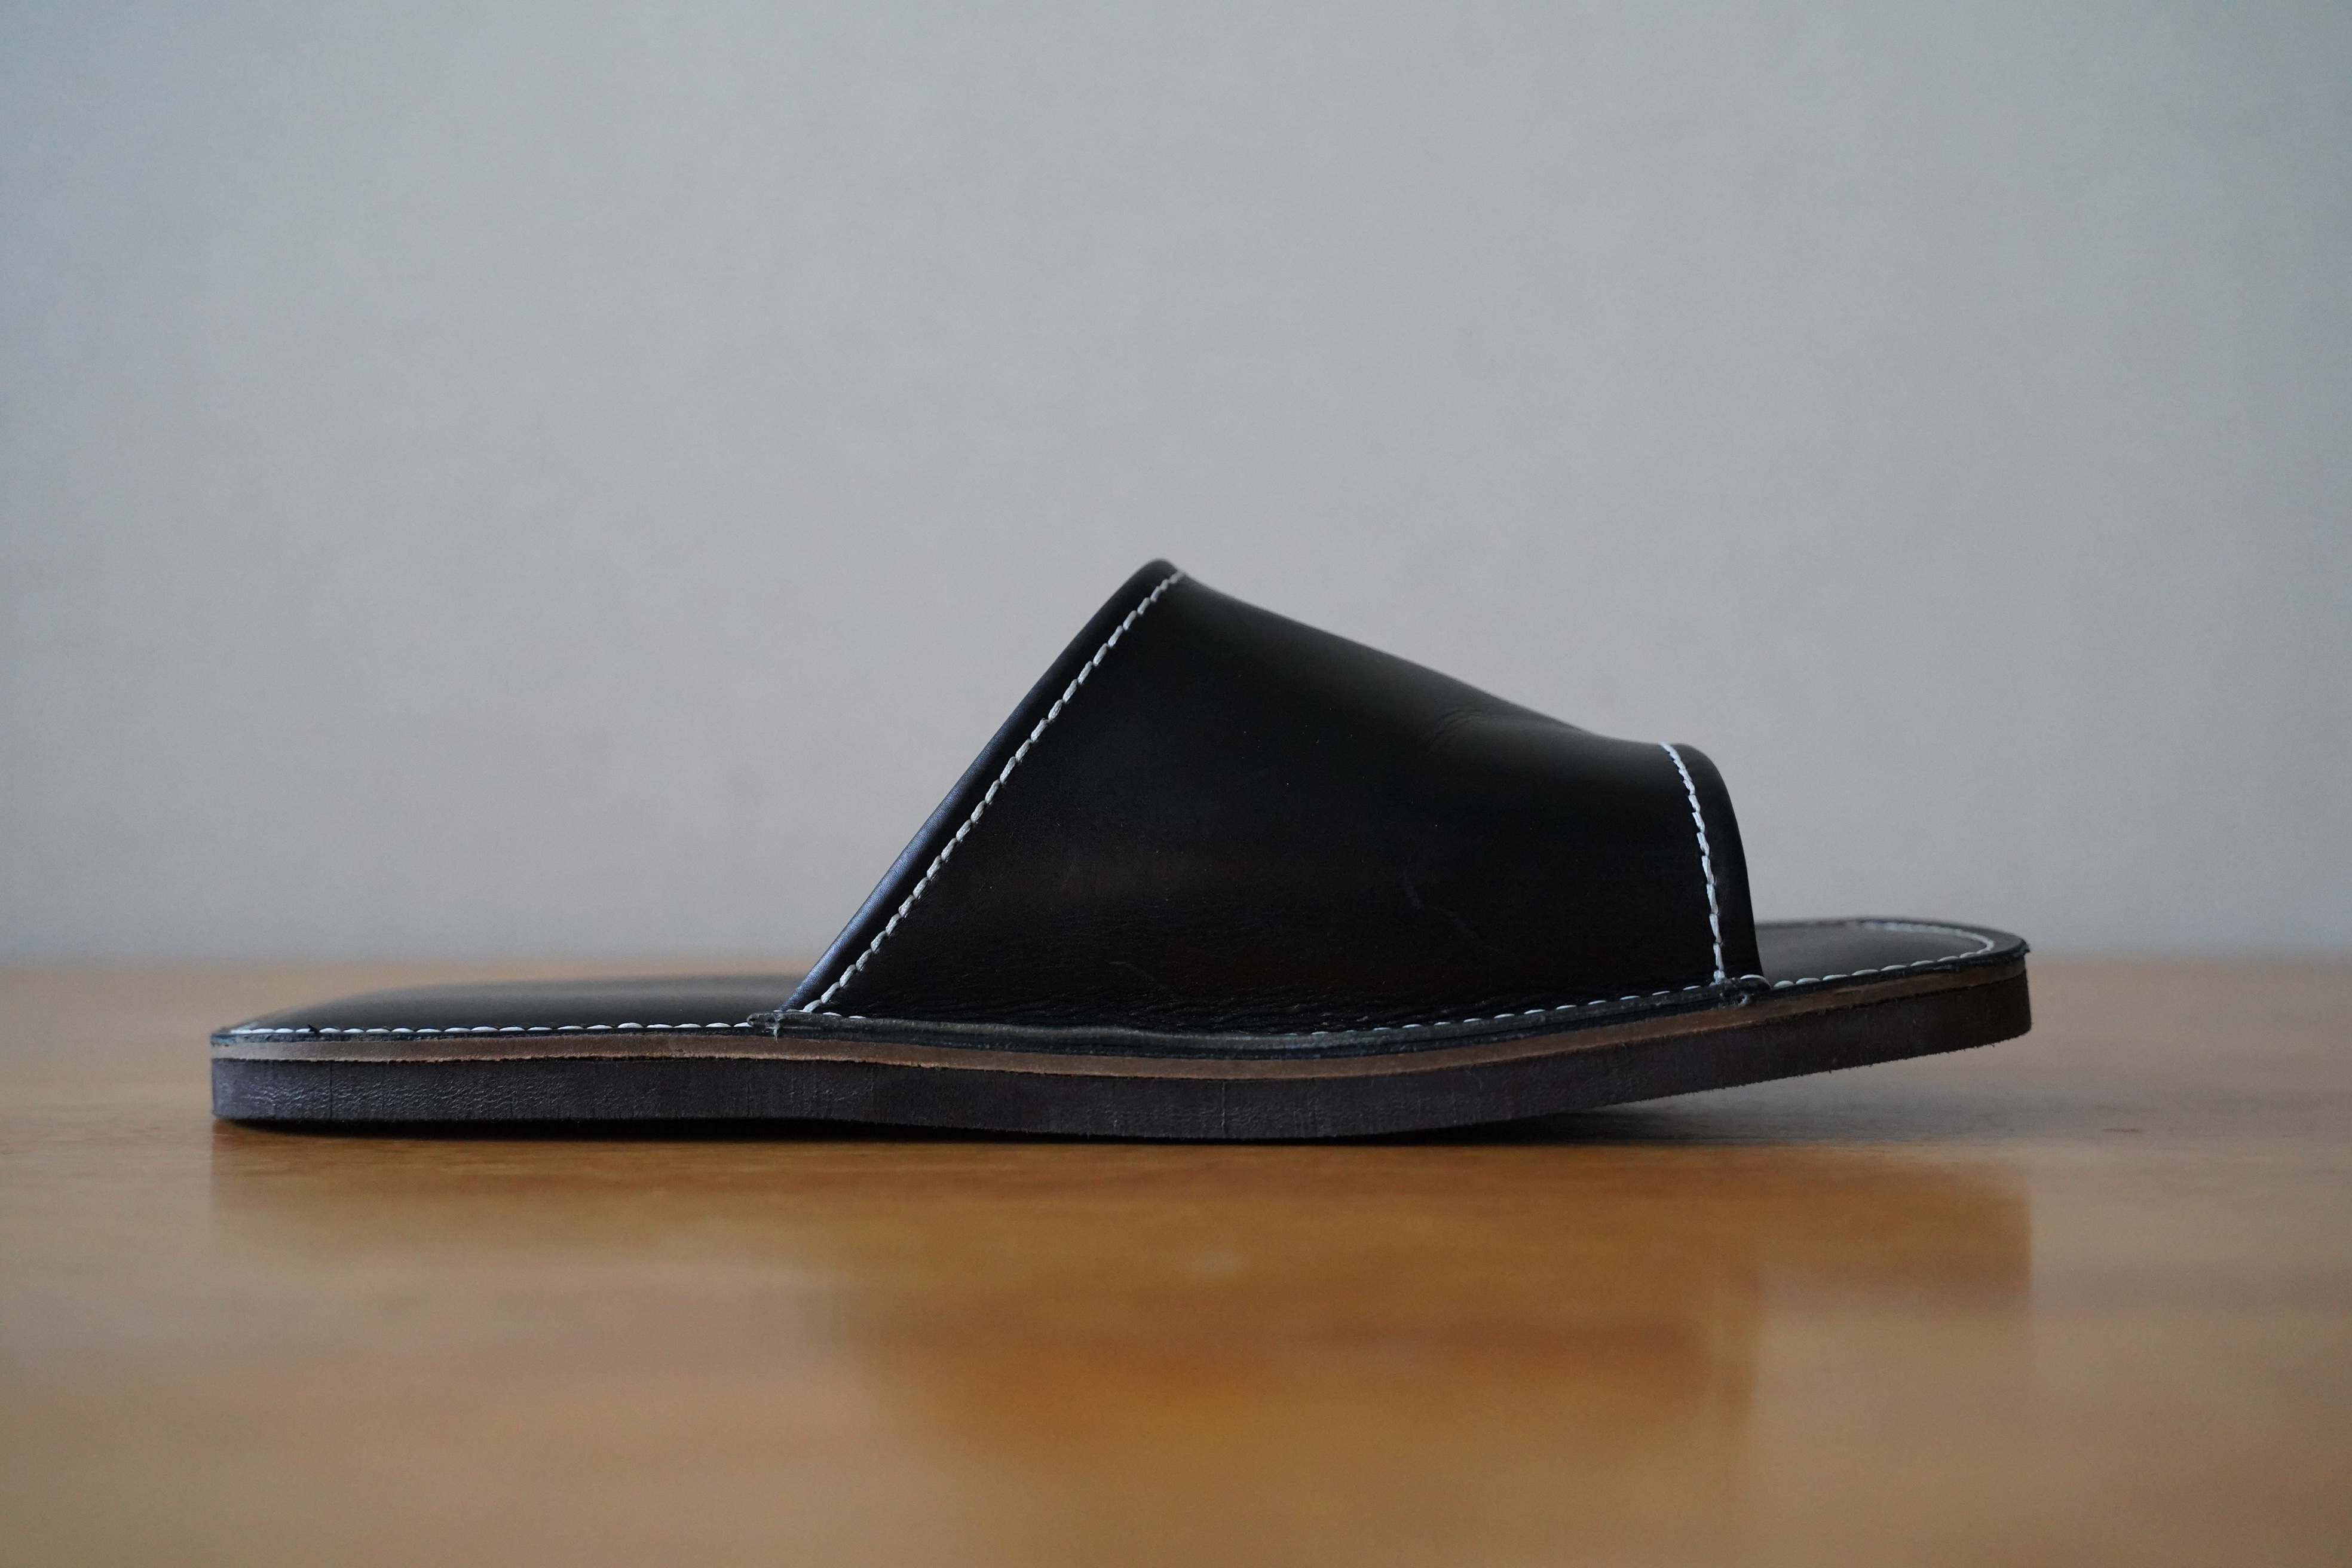 【カーフコンビ】靴職人手作りの本革「プレミアムスリッパ」 ブラック 大きめサイズ（L、2L) H066-028